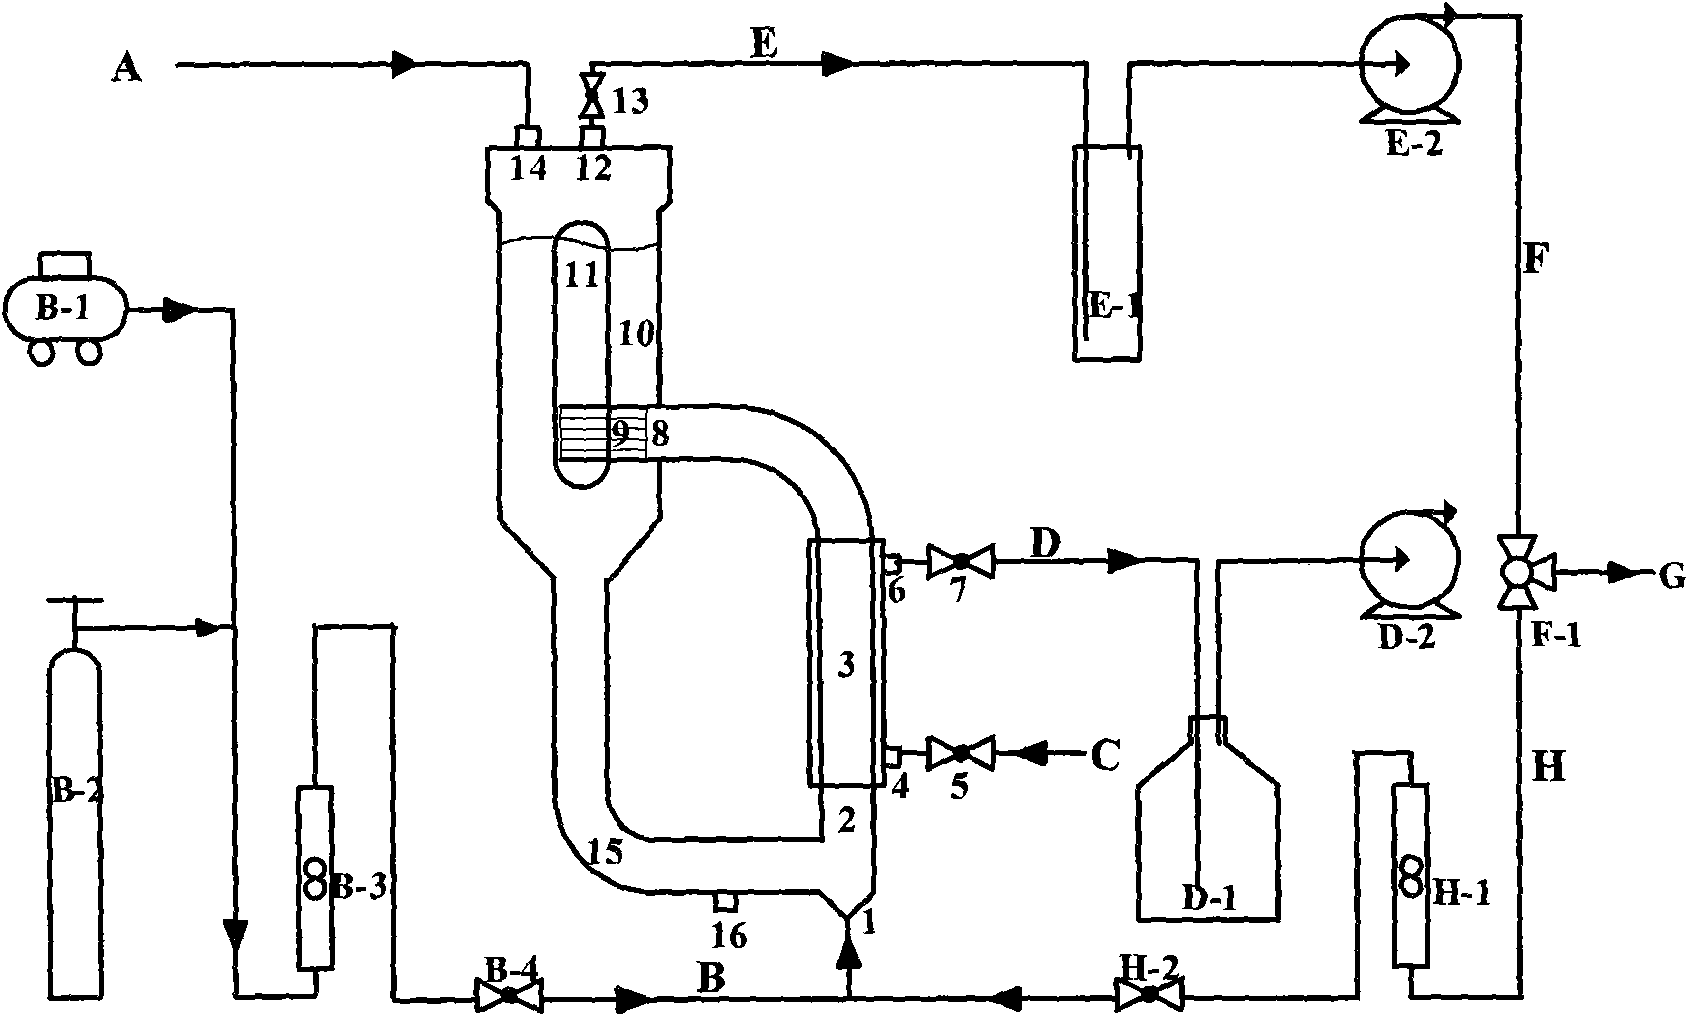 External loop air lift type membrane bioreactor